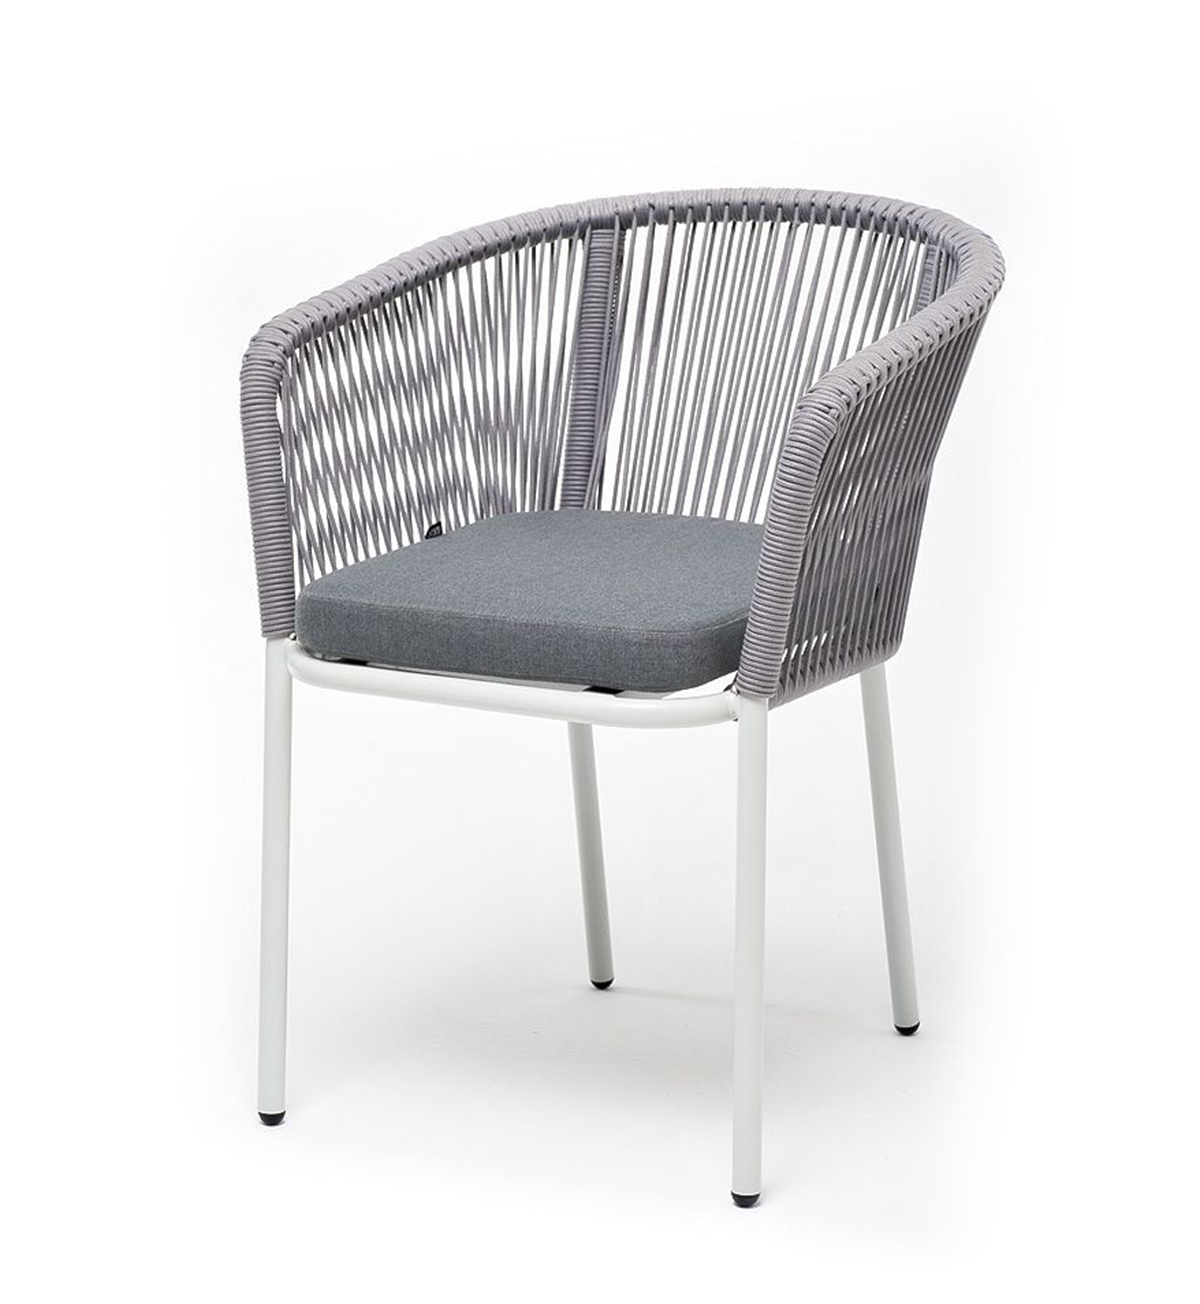 Плетеный стул из роупа Марсель бело-серый плетеный стул лион из роупа темно серый